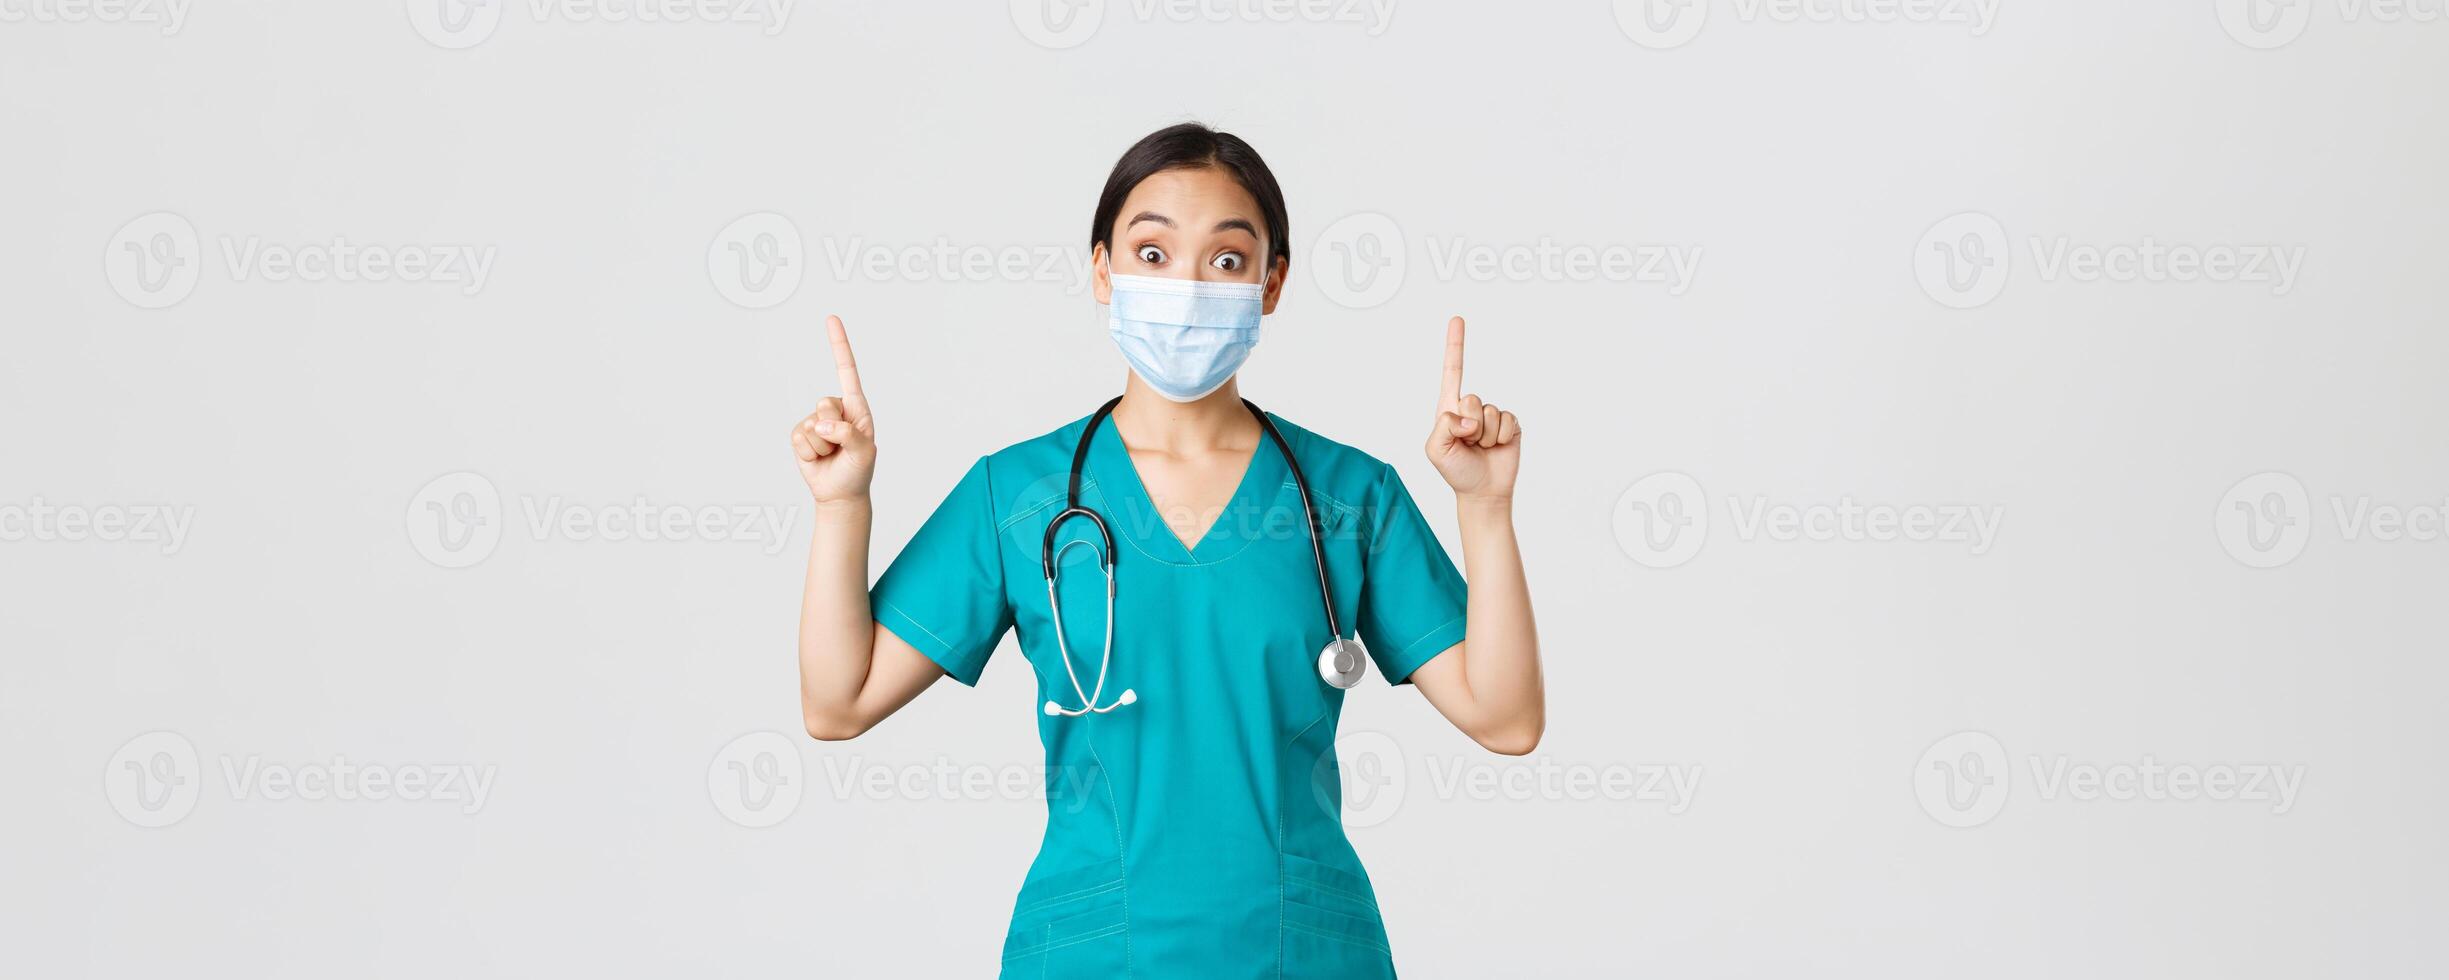 covid19, coronavirus ziekte, gezondheidszorg arbeiders concept. gefascineerd Aziatisch vrouw dokter, arts of intern in medisch masker en schrobben, op zoek nieuwsgierig, richten vingers omhoog, wit achtergrond foto